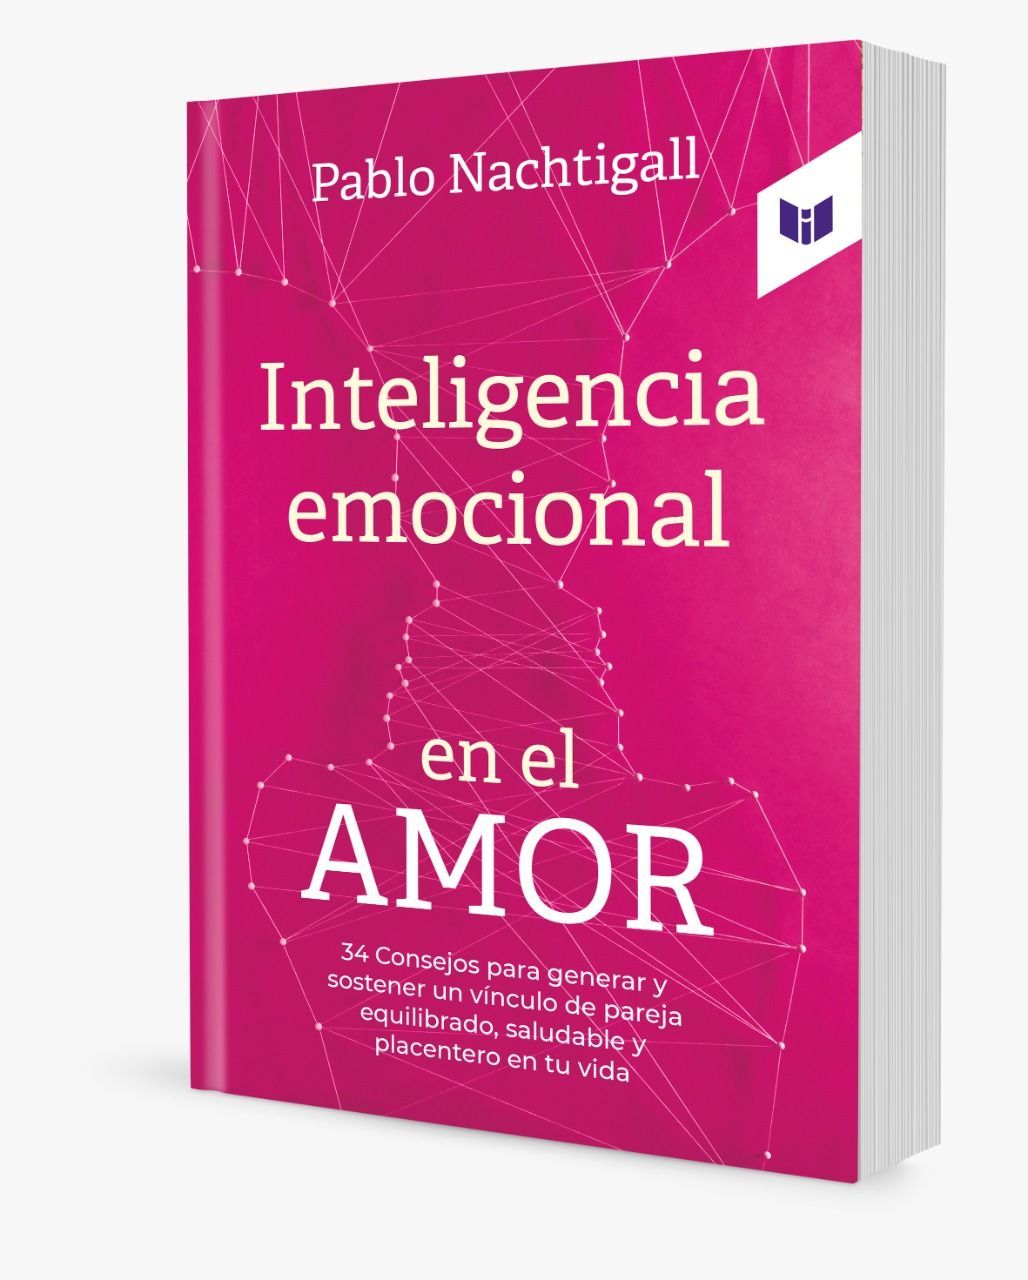 Galería Foto de Salió mi 7º libro "Inteligencia Emocional en el Amor" en principales librerías de Colombia. Suscribite a mi canal de Youtube Pablo Nachtigall